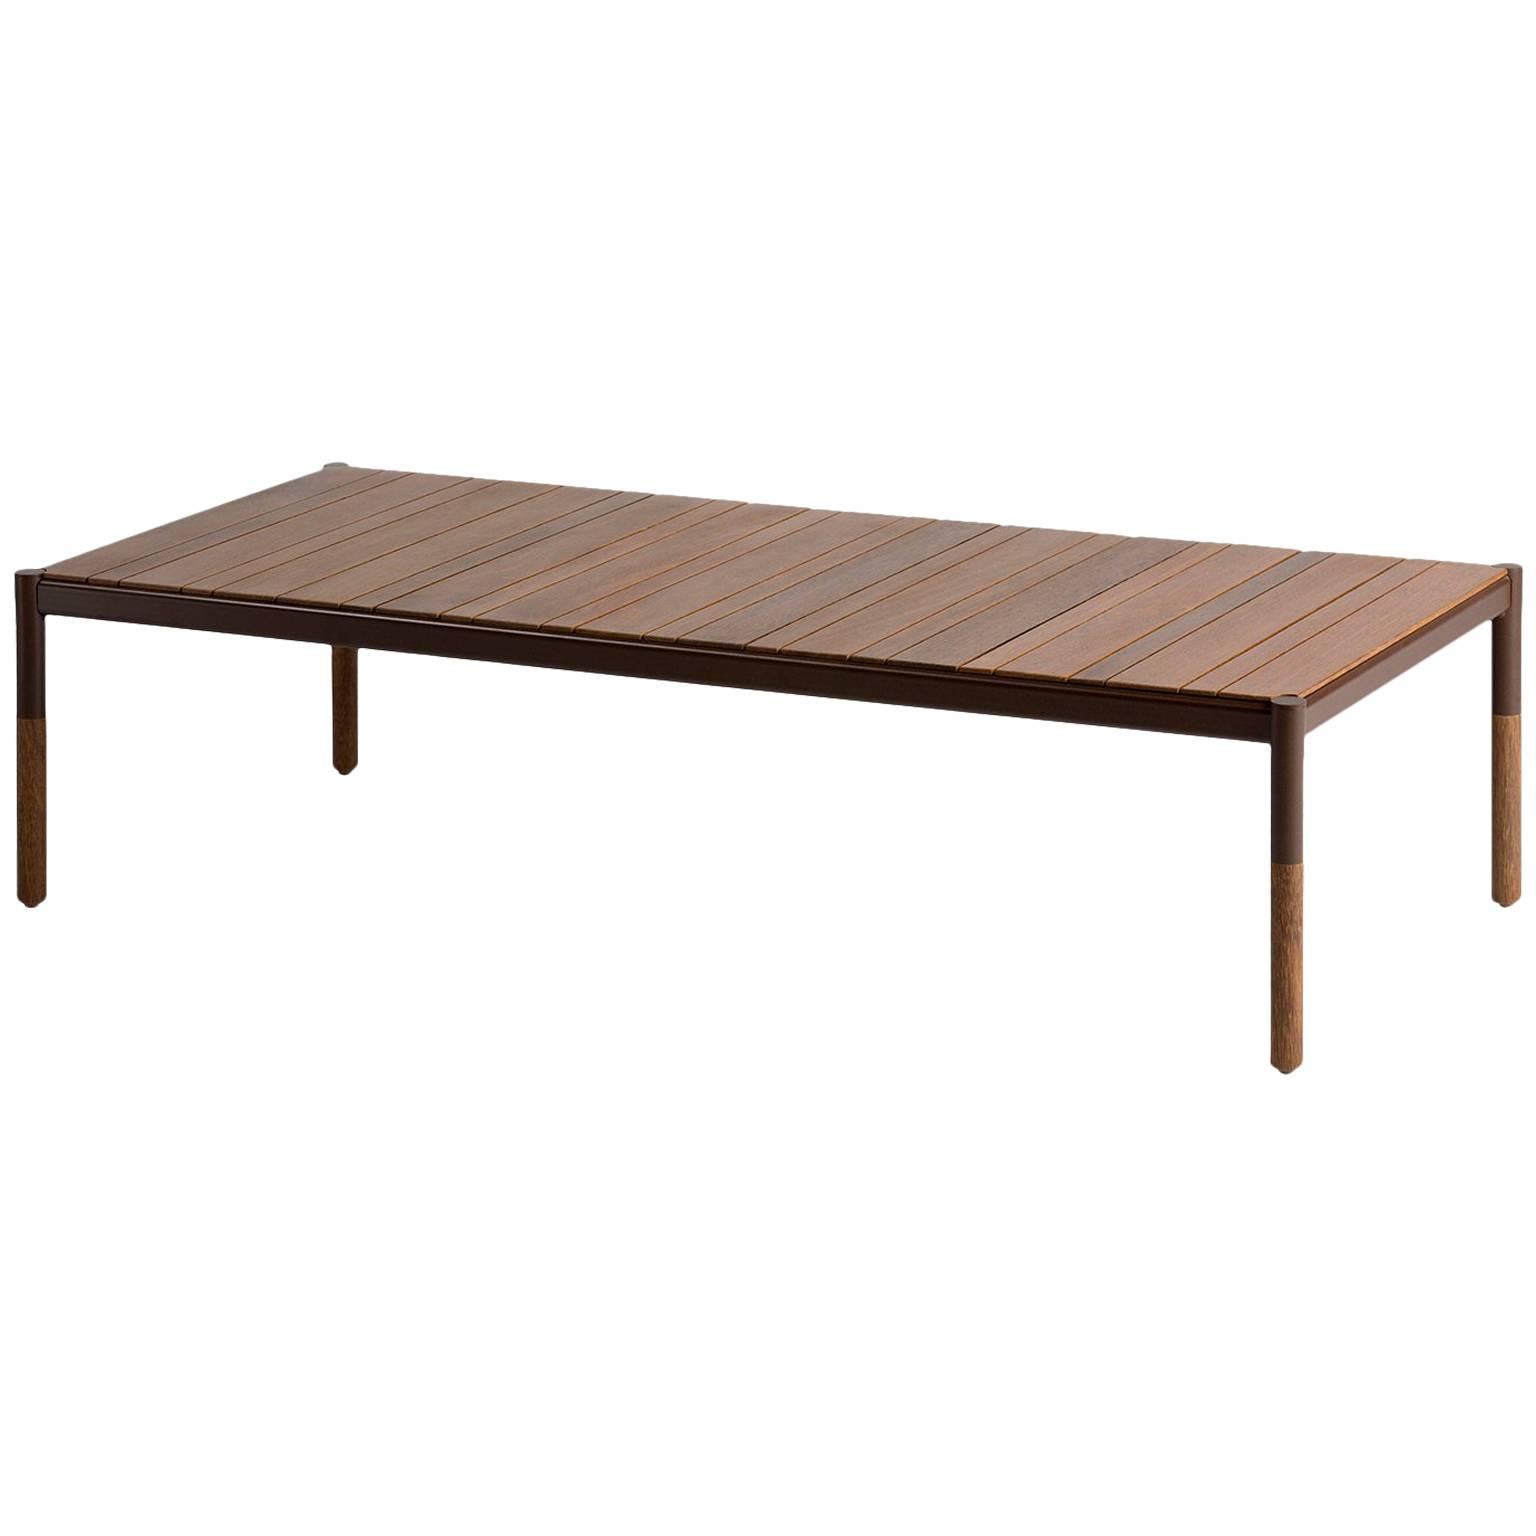 Table centrale d'extérieur en bois dur et métal, design minimaliste